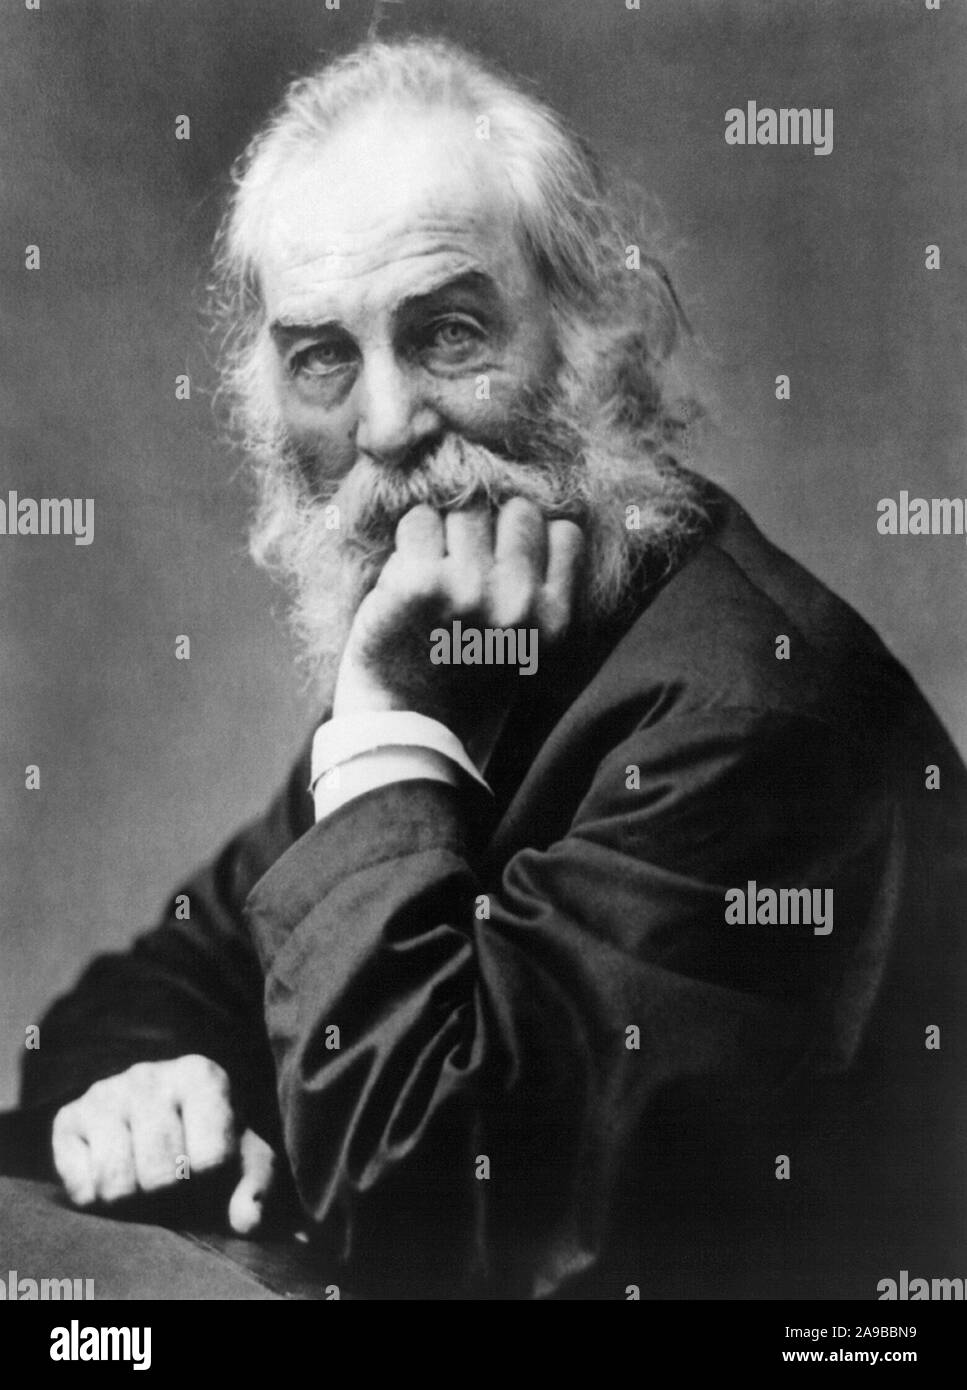 Jahrgang Porträt Foto der amerikanischen Dichter, Essayist und Journalist Walt Whitman (1819 - 1892). Foto ca. 1869 von Frank Pearsall. Stockfoto